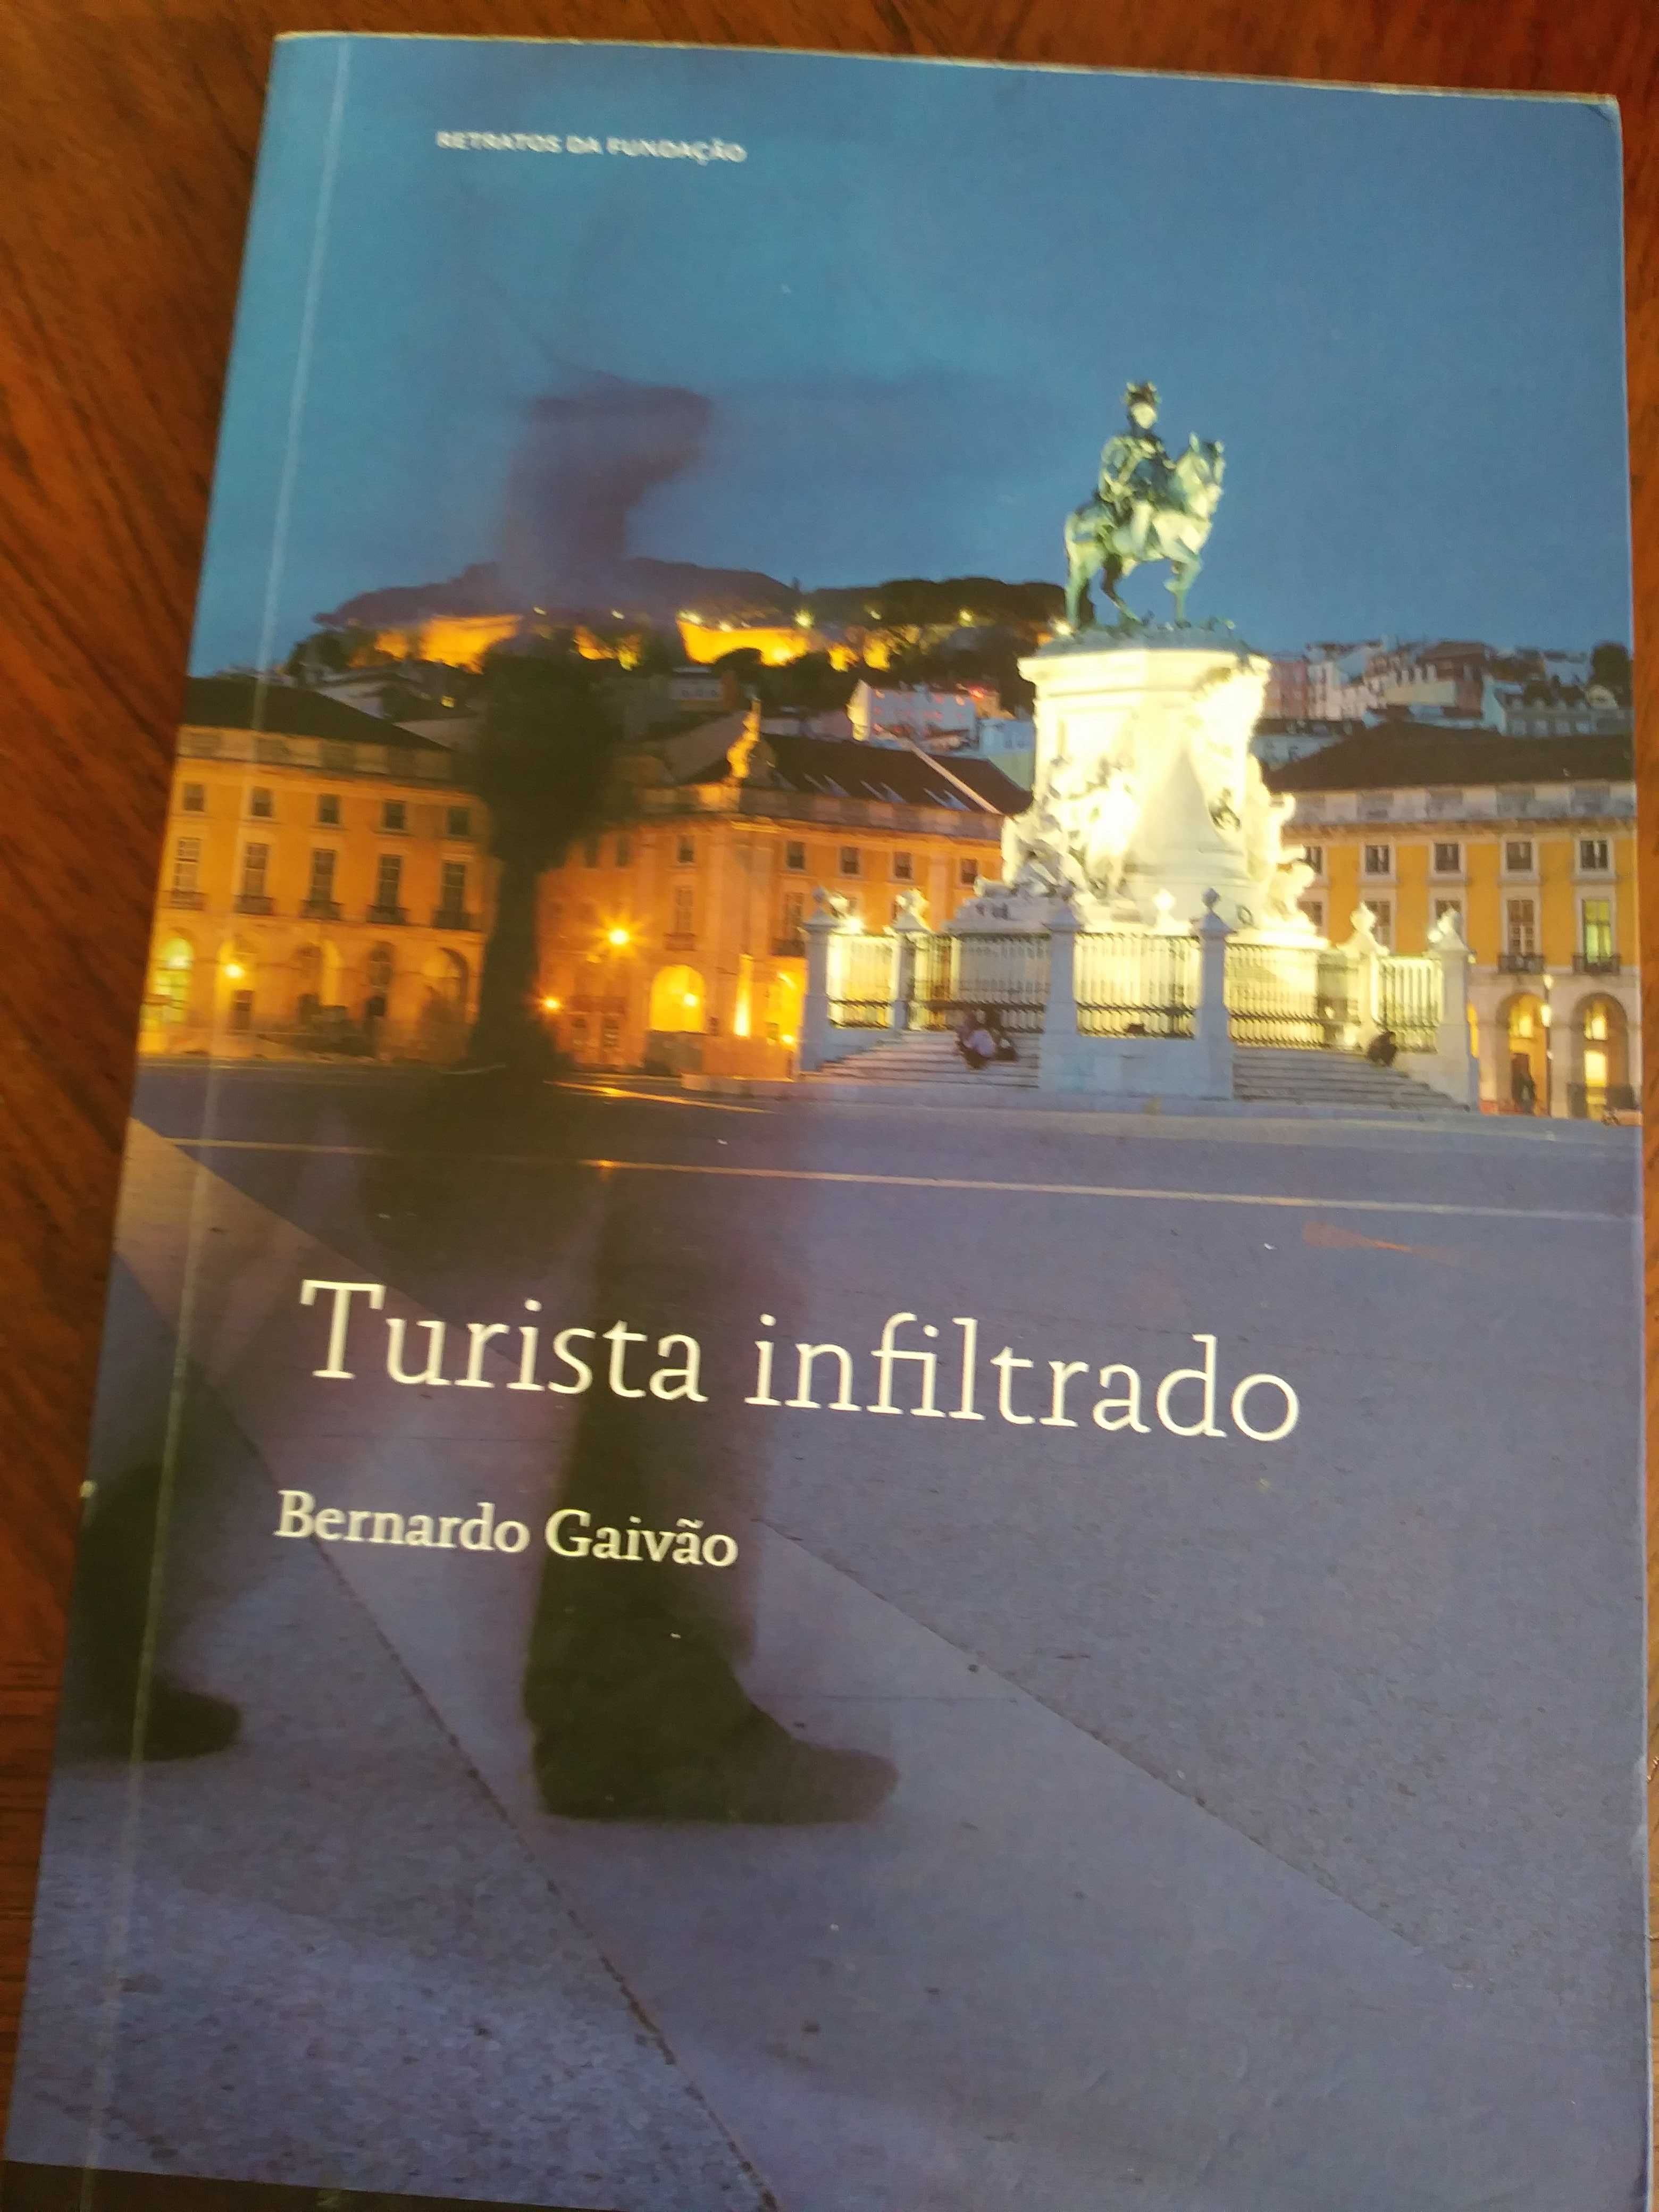 Turista infiltrado de Bernardo Gaivão